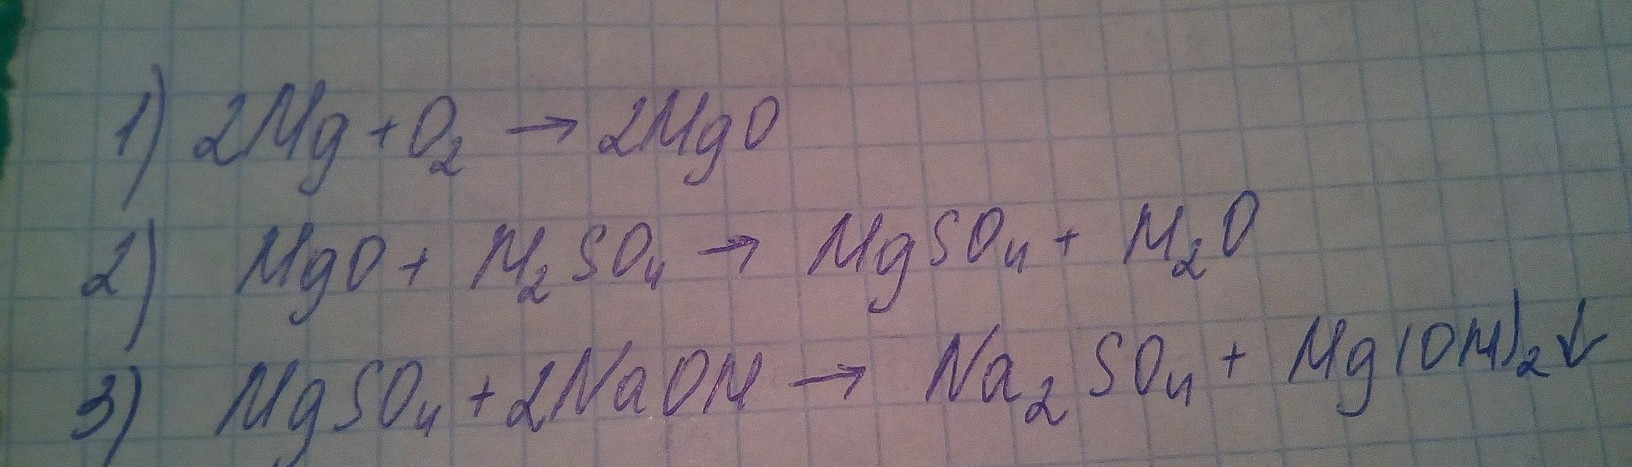 Реакция mgcl2 mgso4. Mgso4 MG Oh 2. Осуществить следующие превращения MG MGO MG Oh 2. MGO mgso4. Осуществить цепочку превращений MG MGO mgcl2 MG Oh 2 MGO.